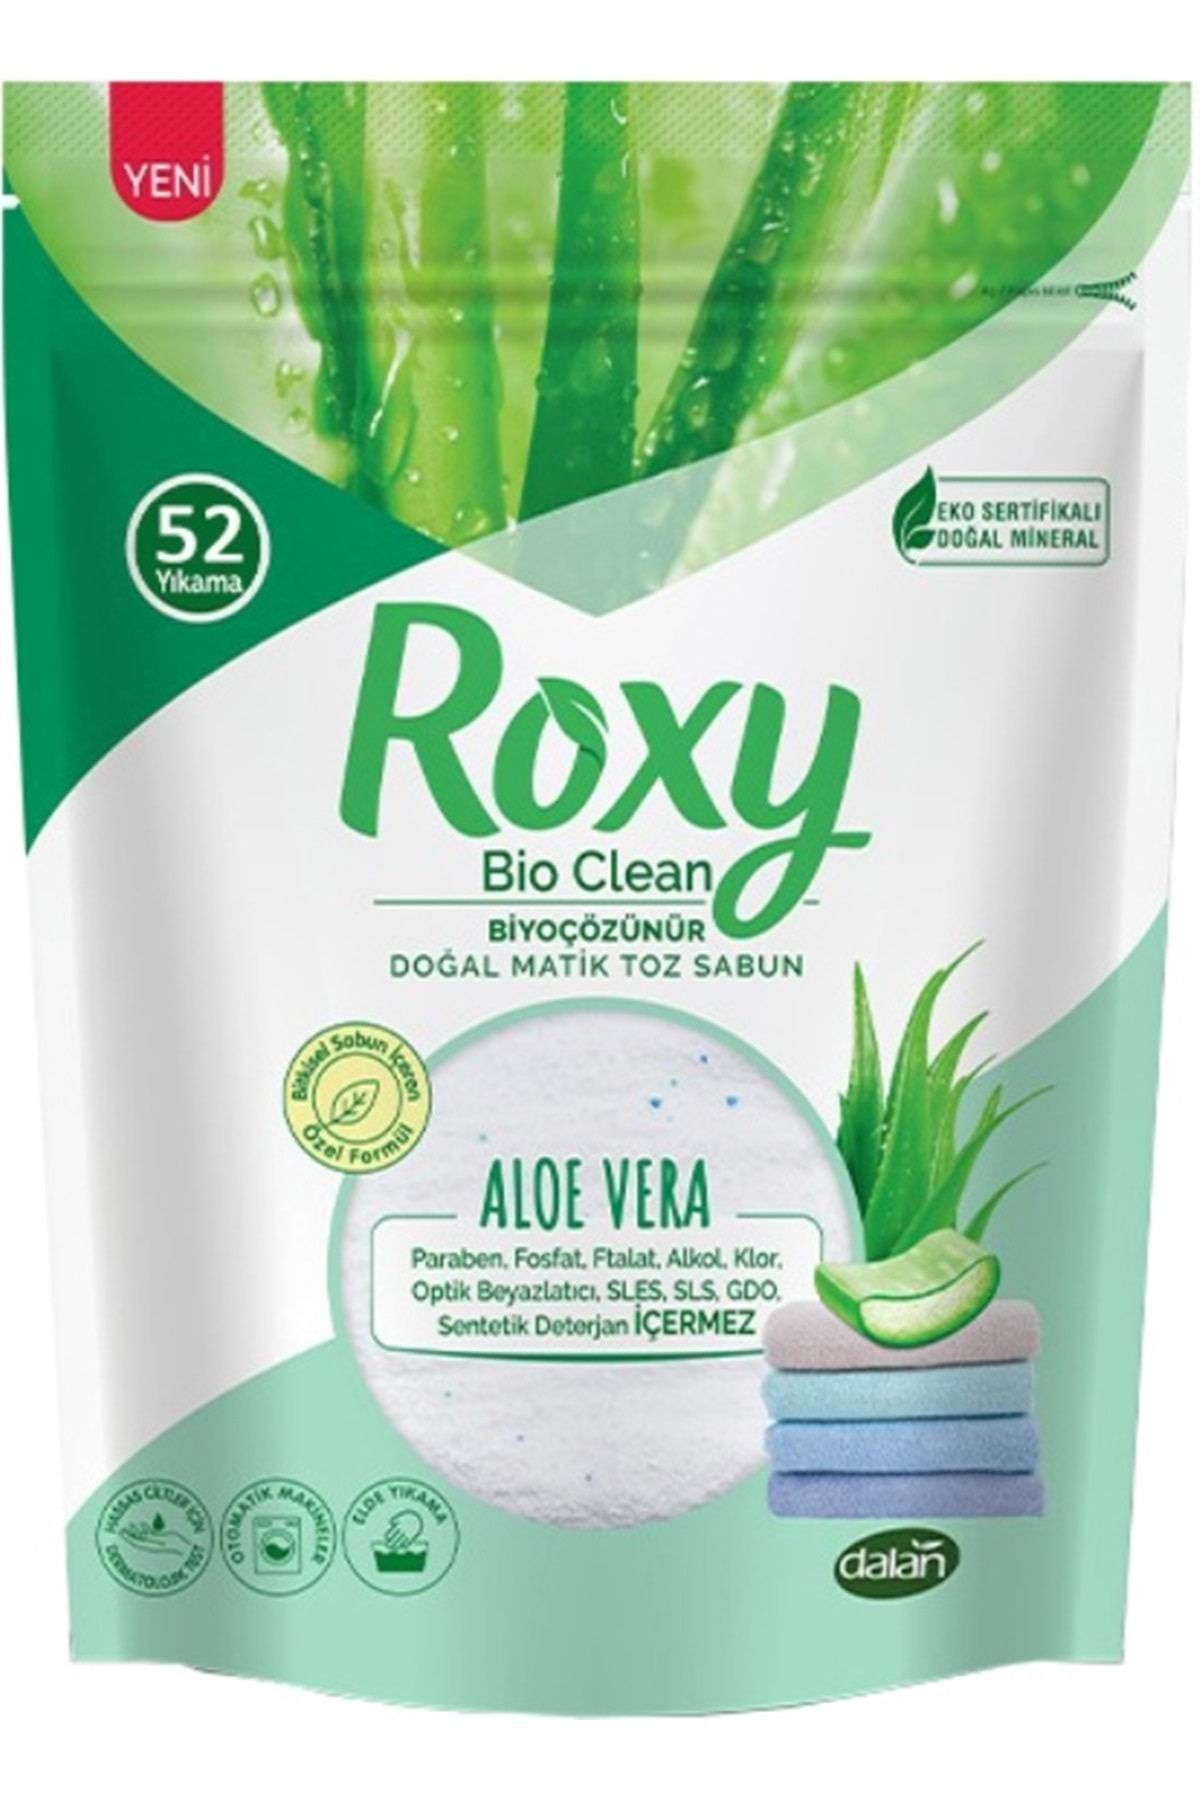 Dalan Roxy Bio Clean Matik Sabun Tozu 1.6kg Aloe Vera (52 Yıkama)